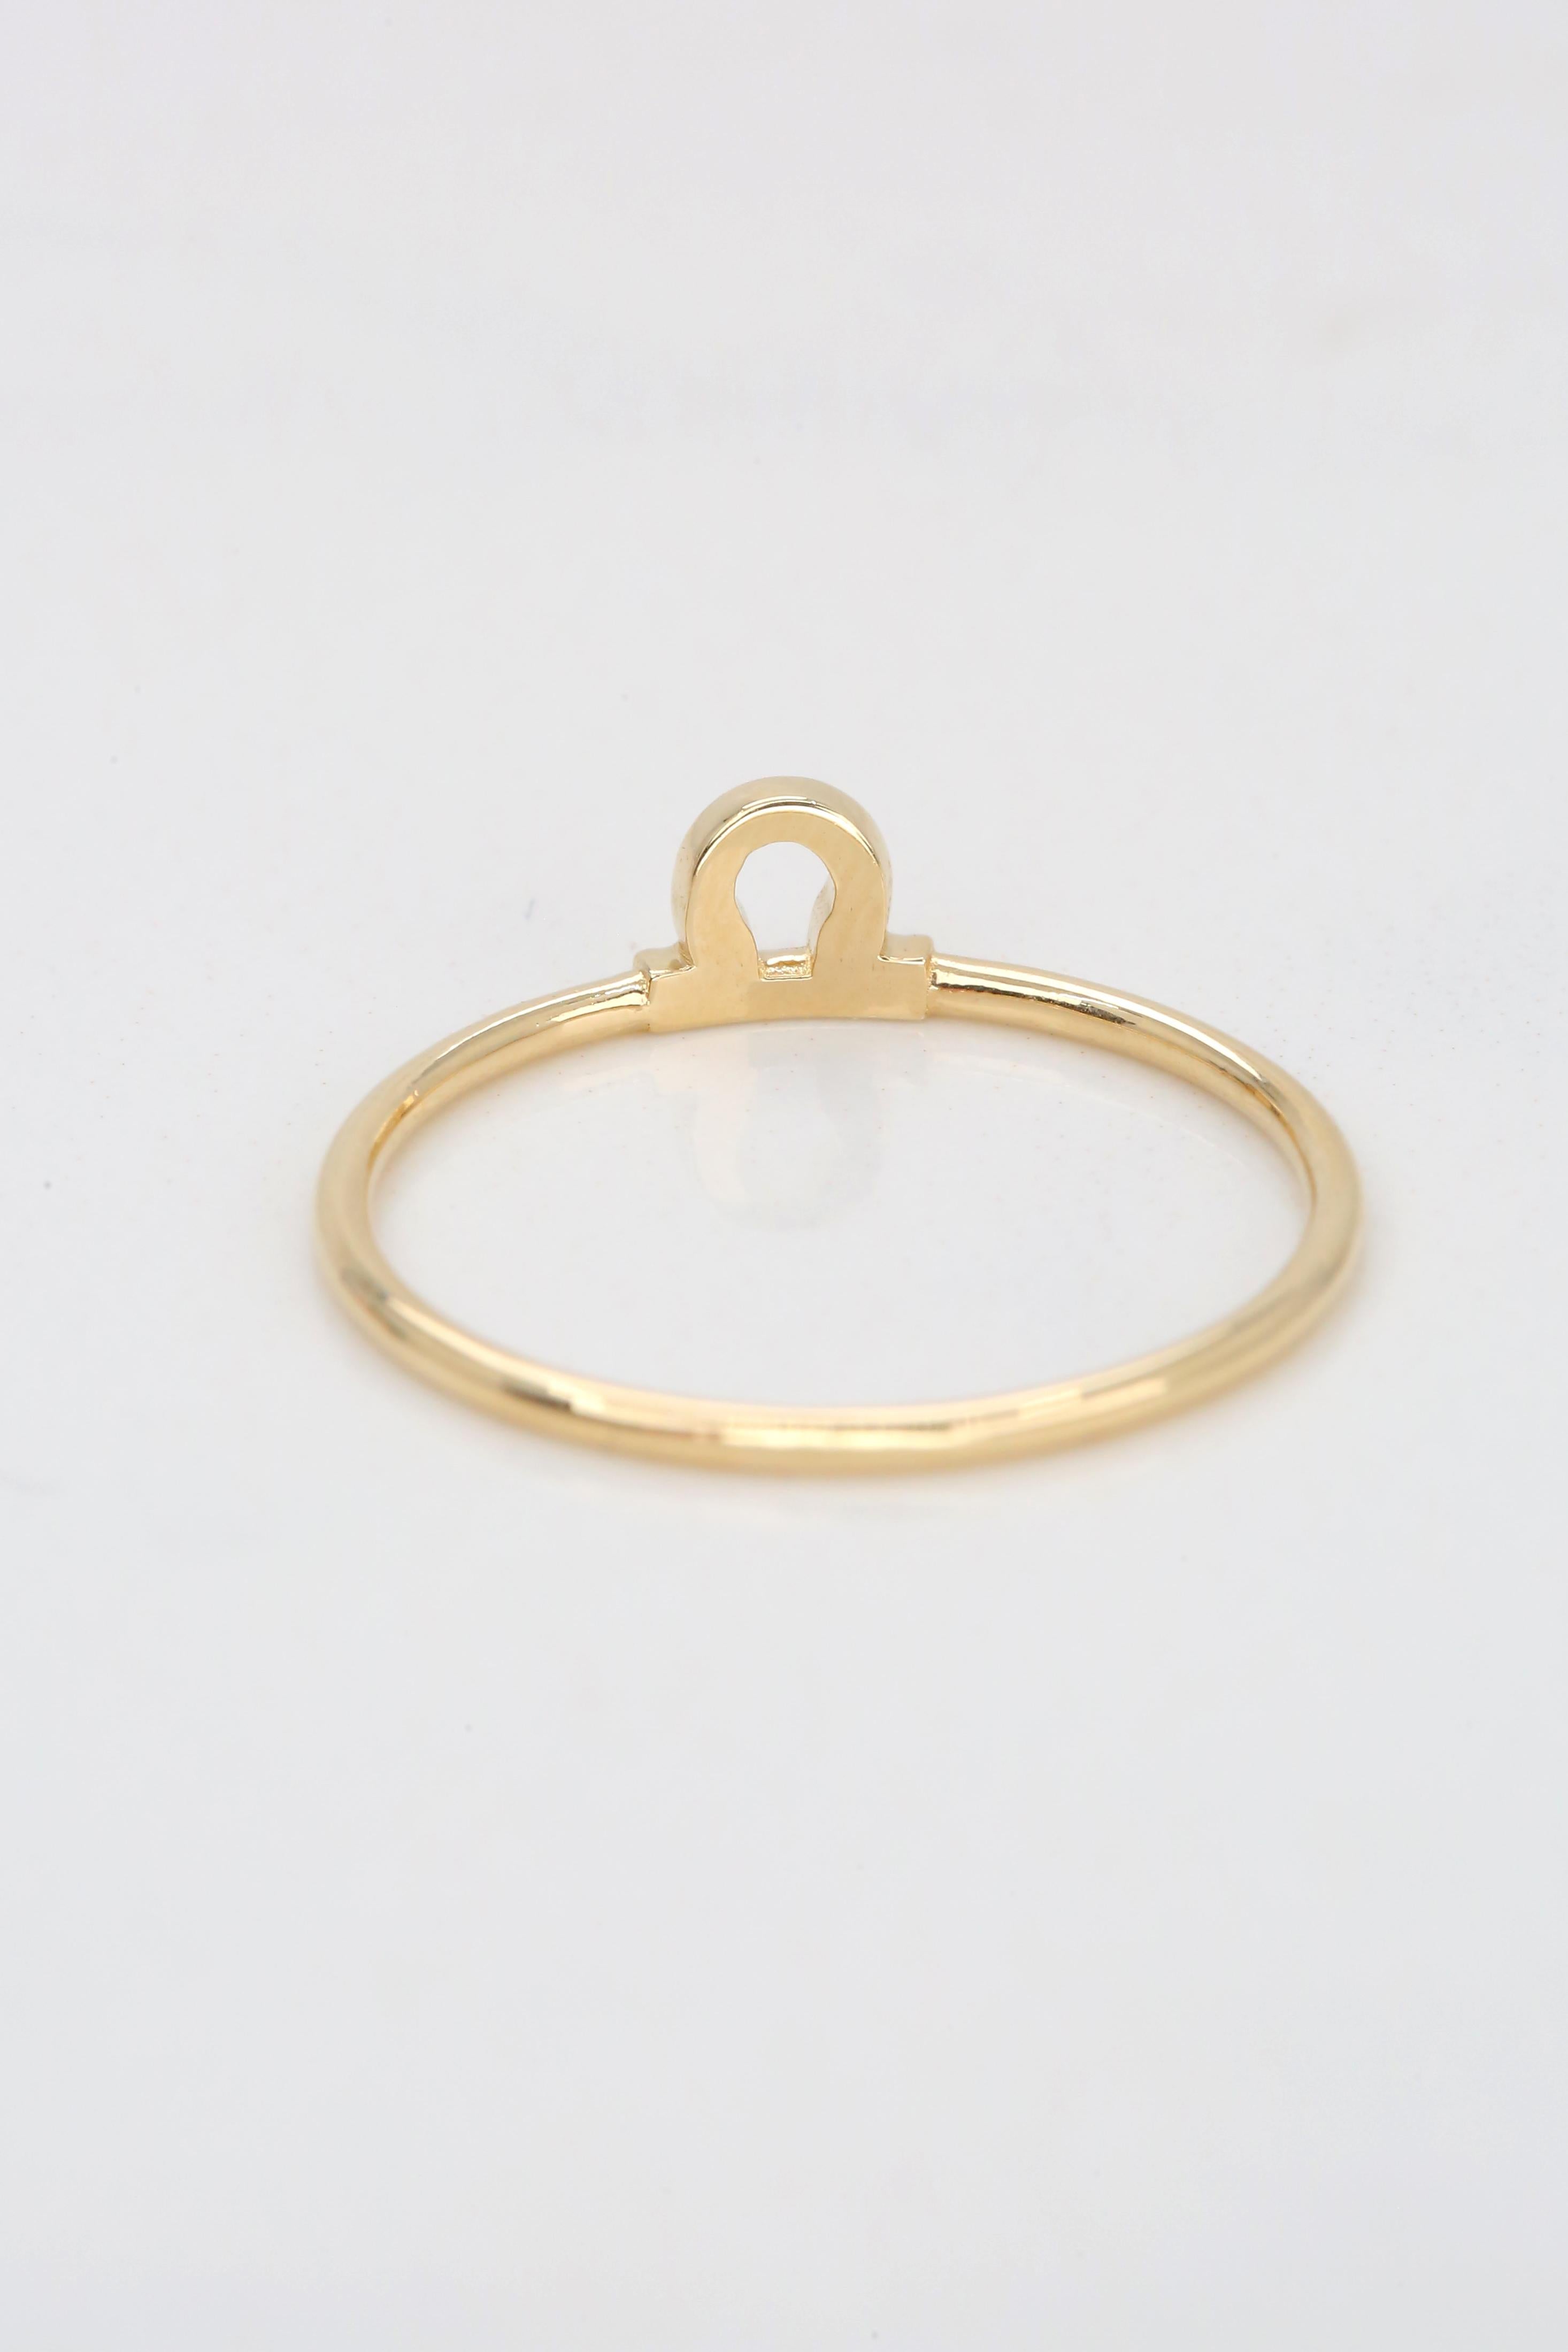 For Sale:  14K Gold Libra Zodiac Ring, Libra Sign Zodiac Ring 3